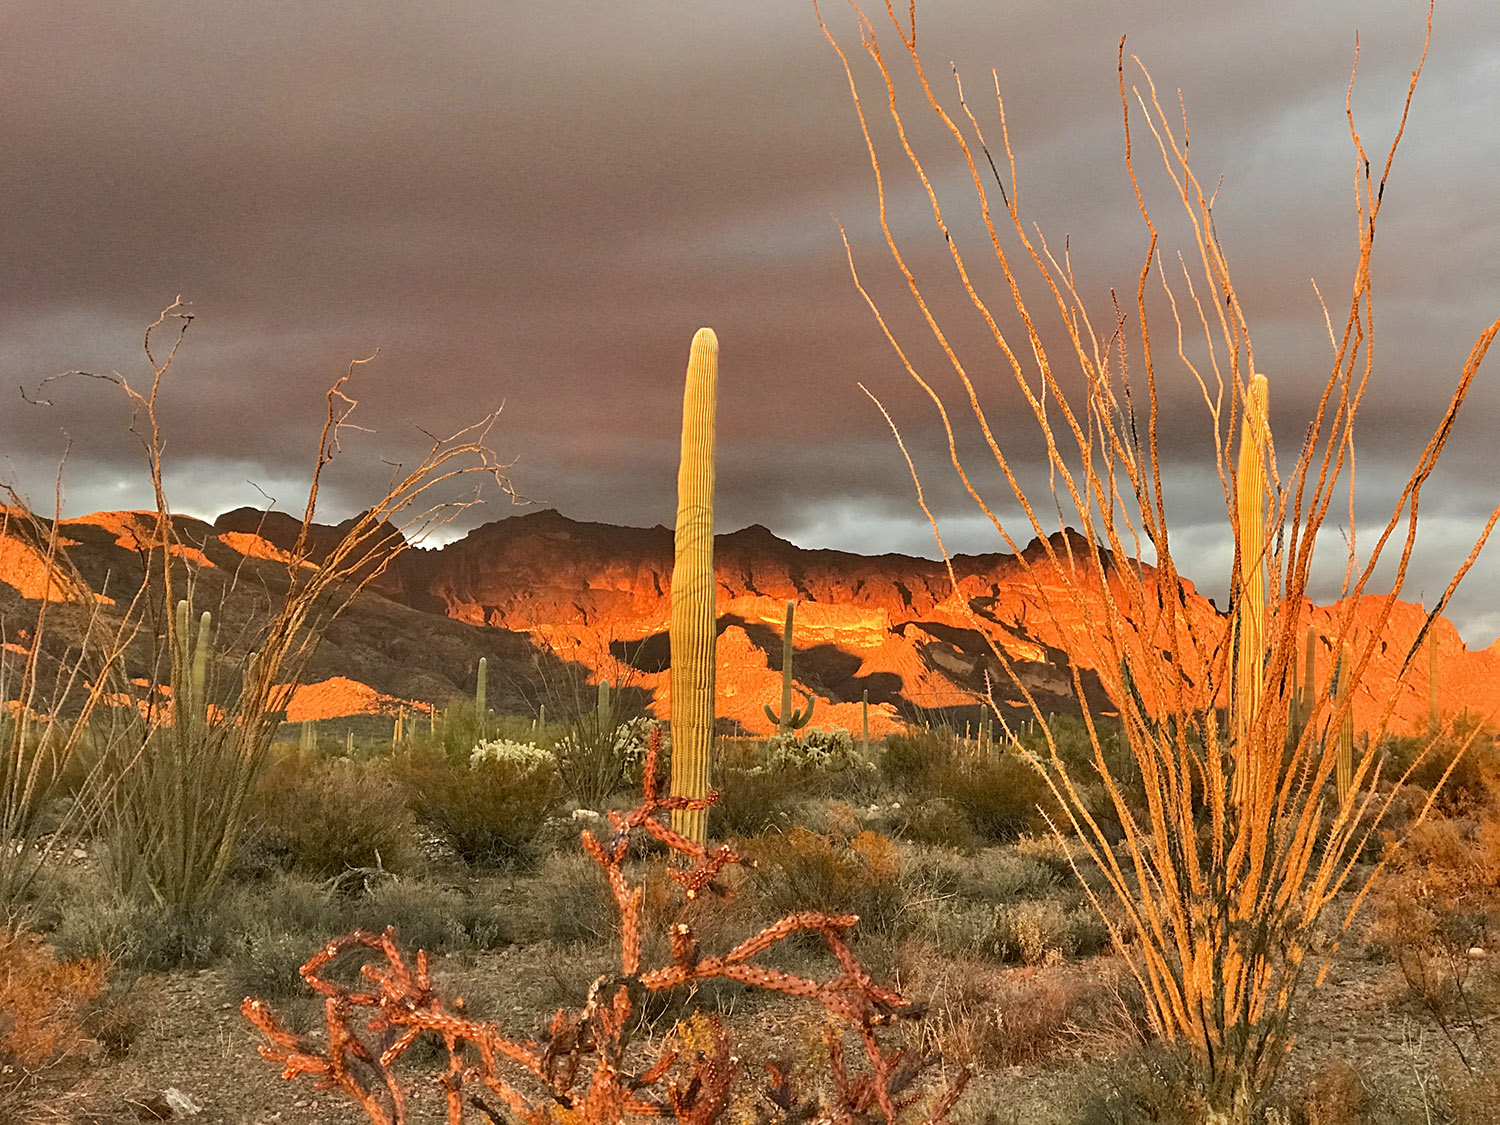 Sunset illuminates towering cacti in crimson light as mountains loom on the horizon.